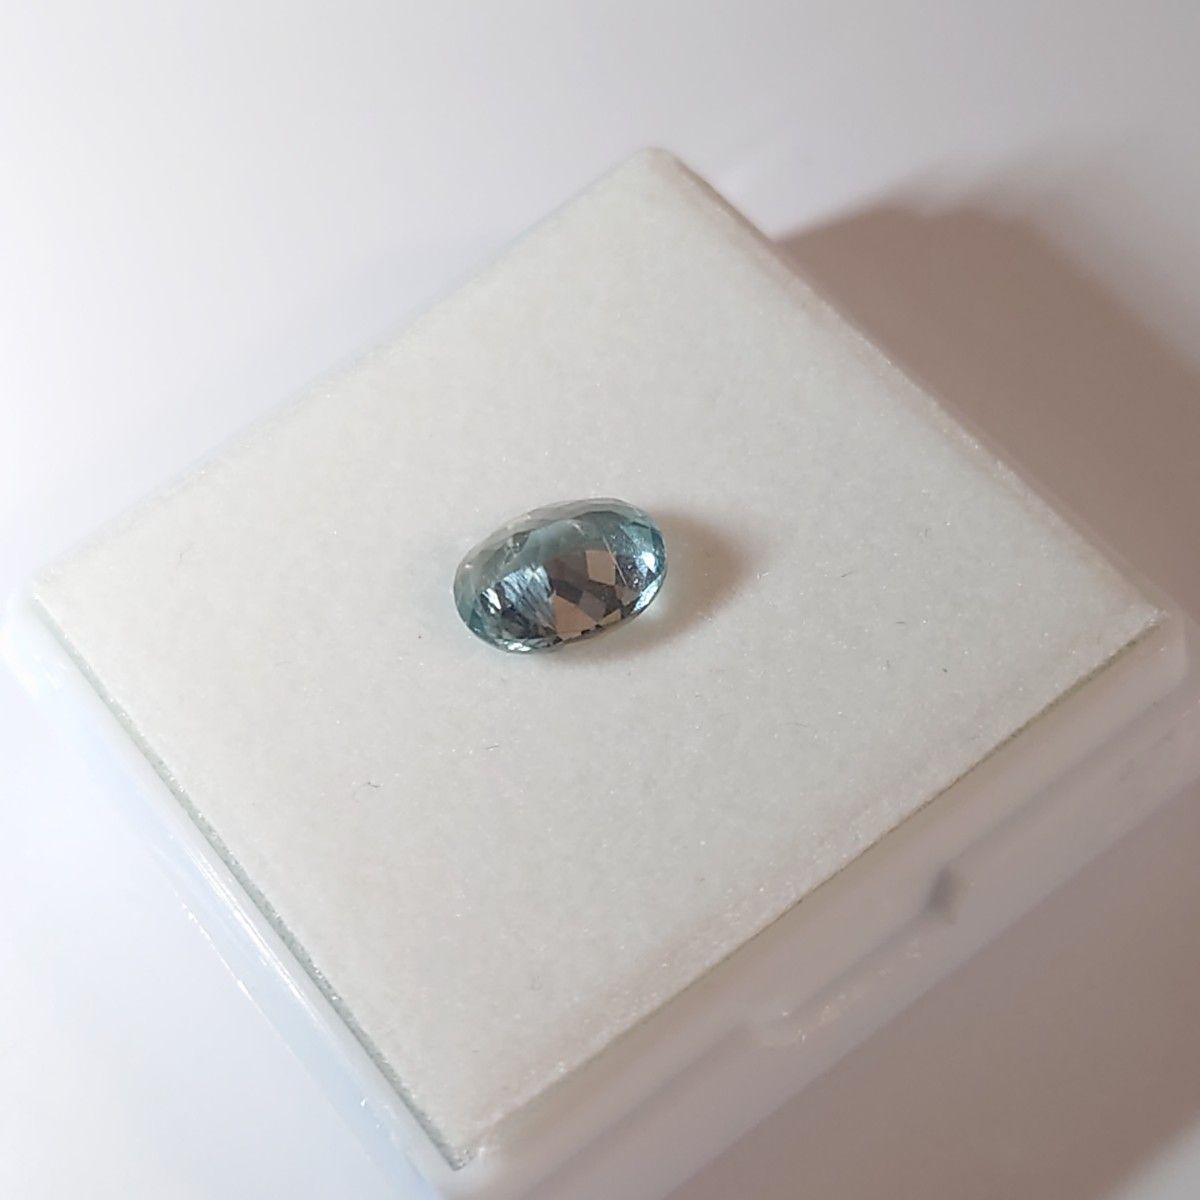 【18】大きめ2.3ct グリーンカイヤナイト 宝石 ルース